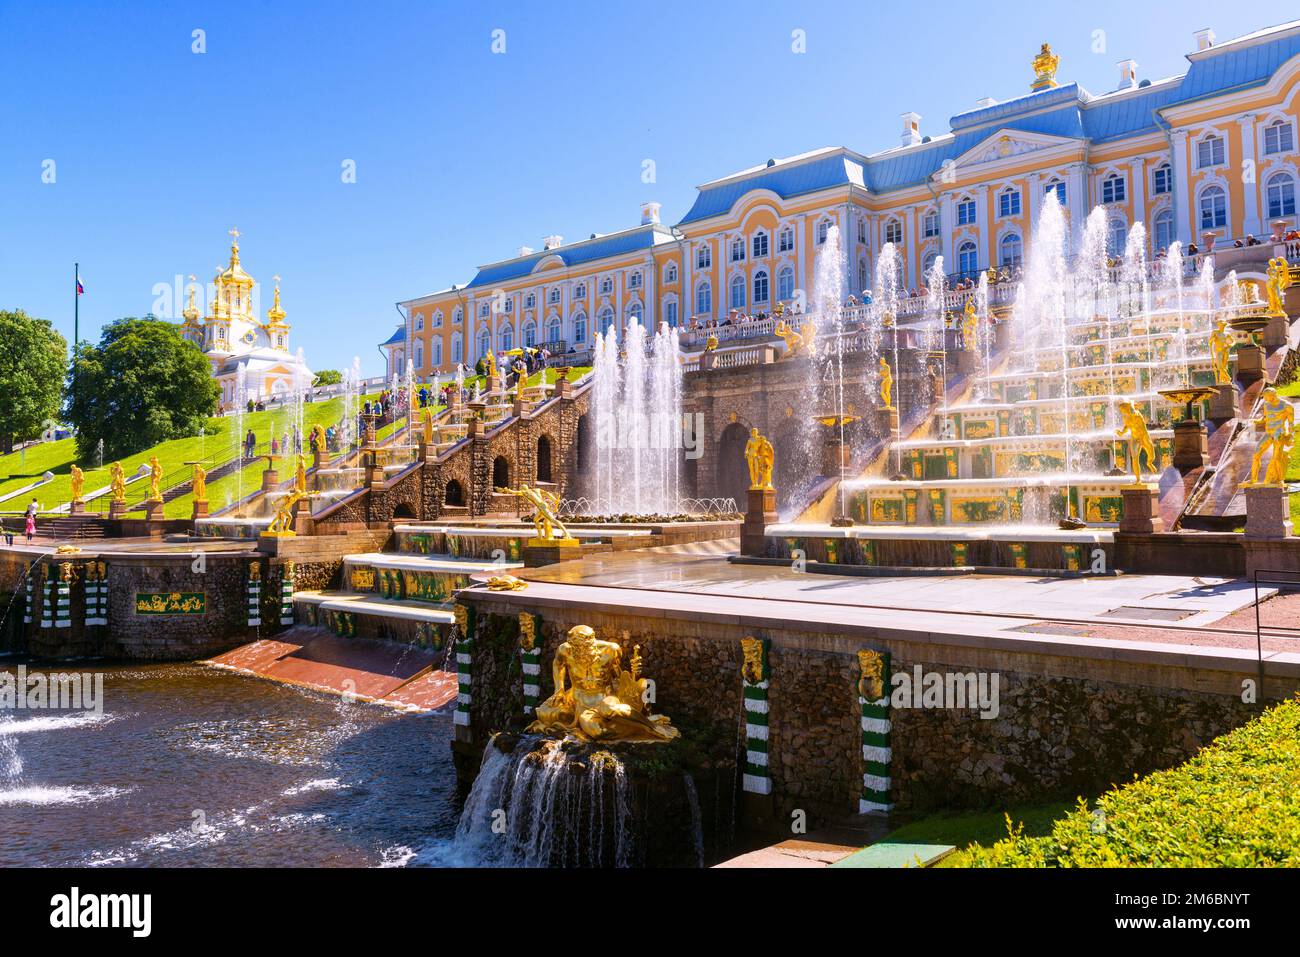 Brunnen im Schloss Peterhof in der Nähe von St. Petersburg, Russland. Schloss Peterhof ist eine berühmte Touristenattraktion. Thema von Trav Stockfoto